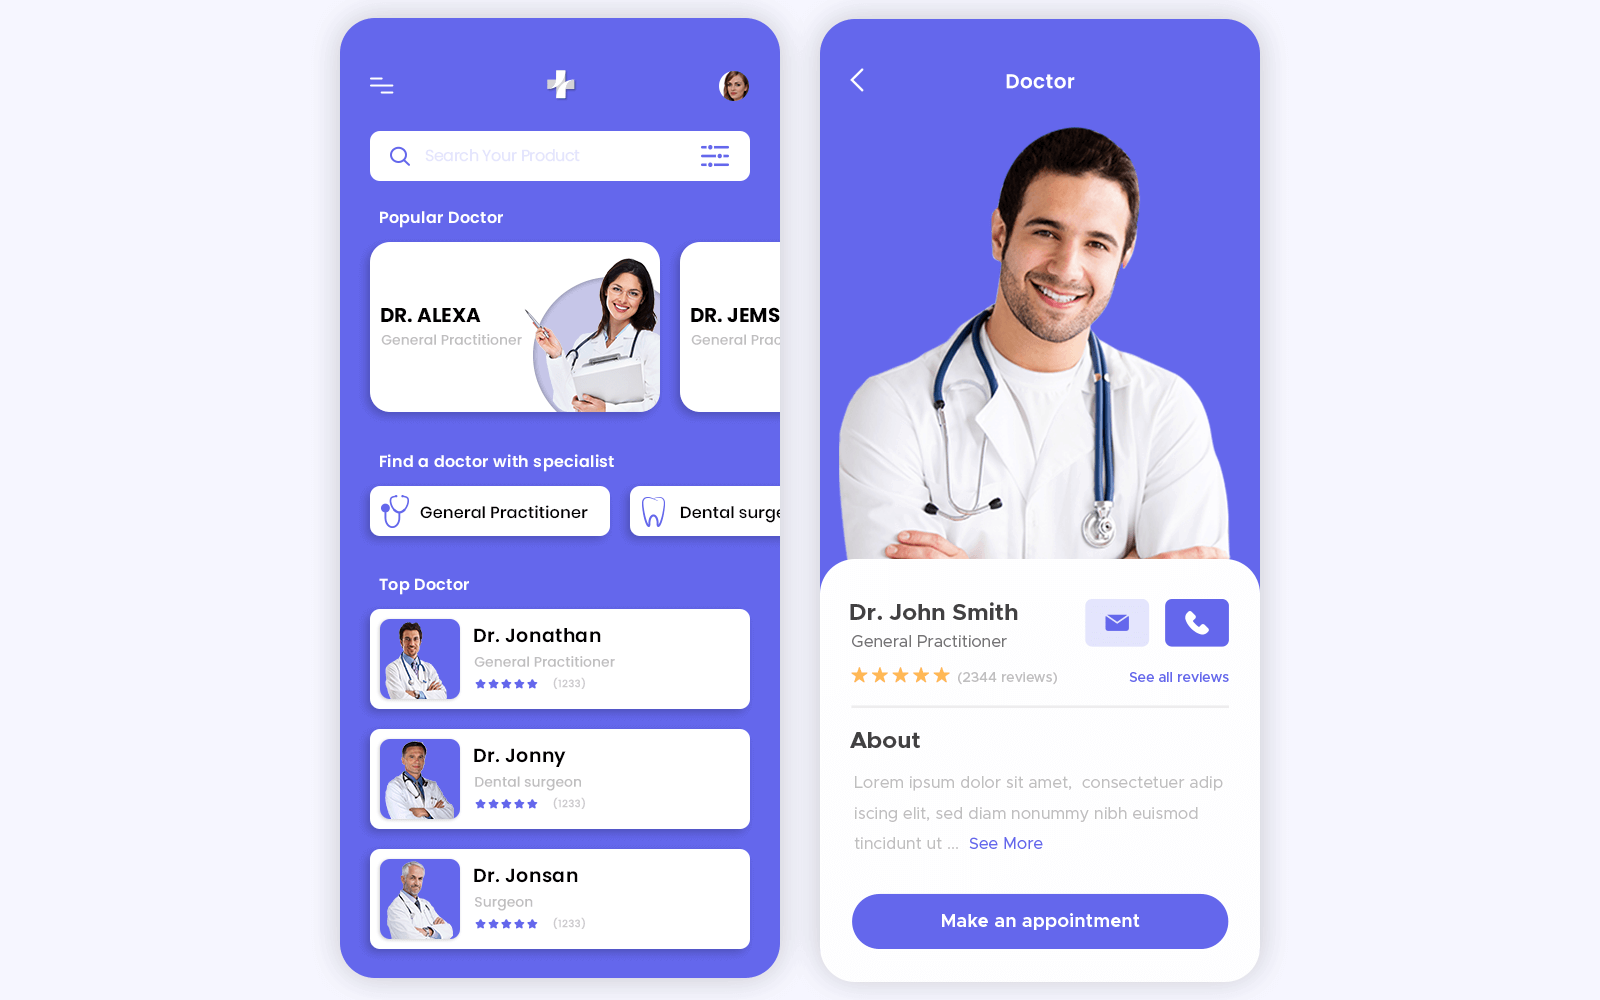 Remote Healthcare App